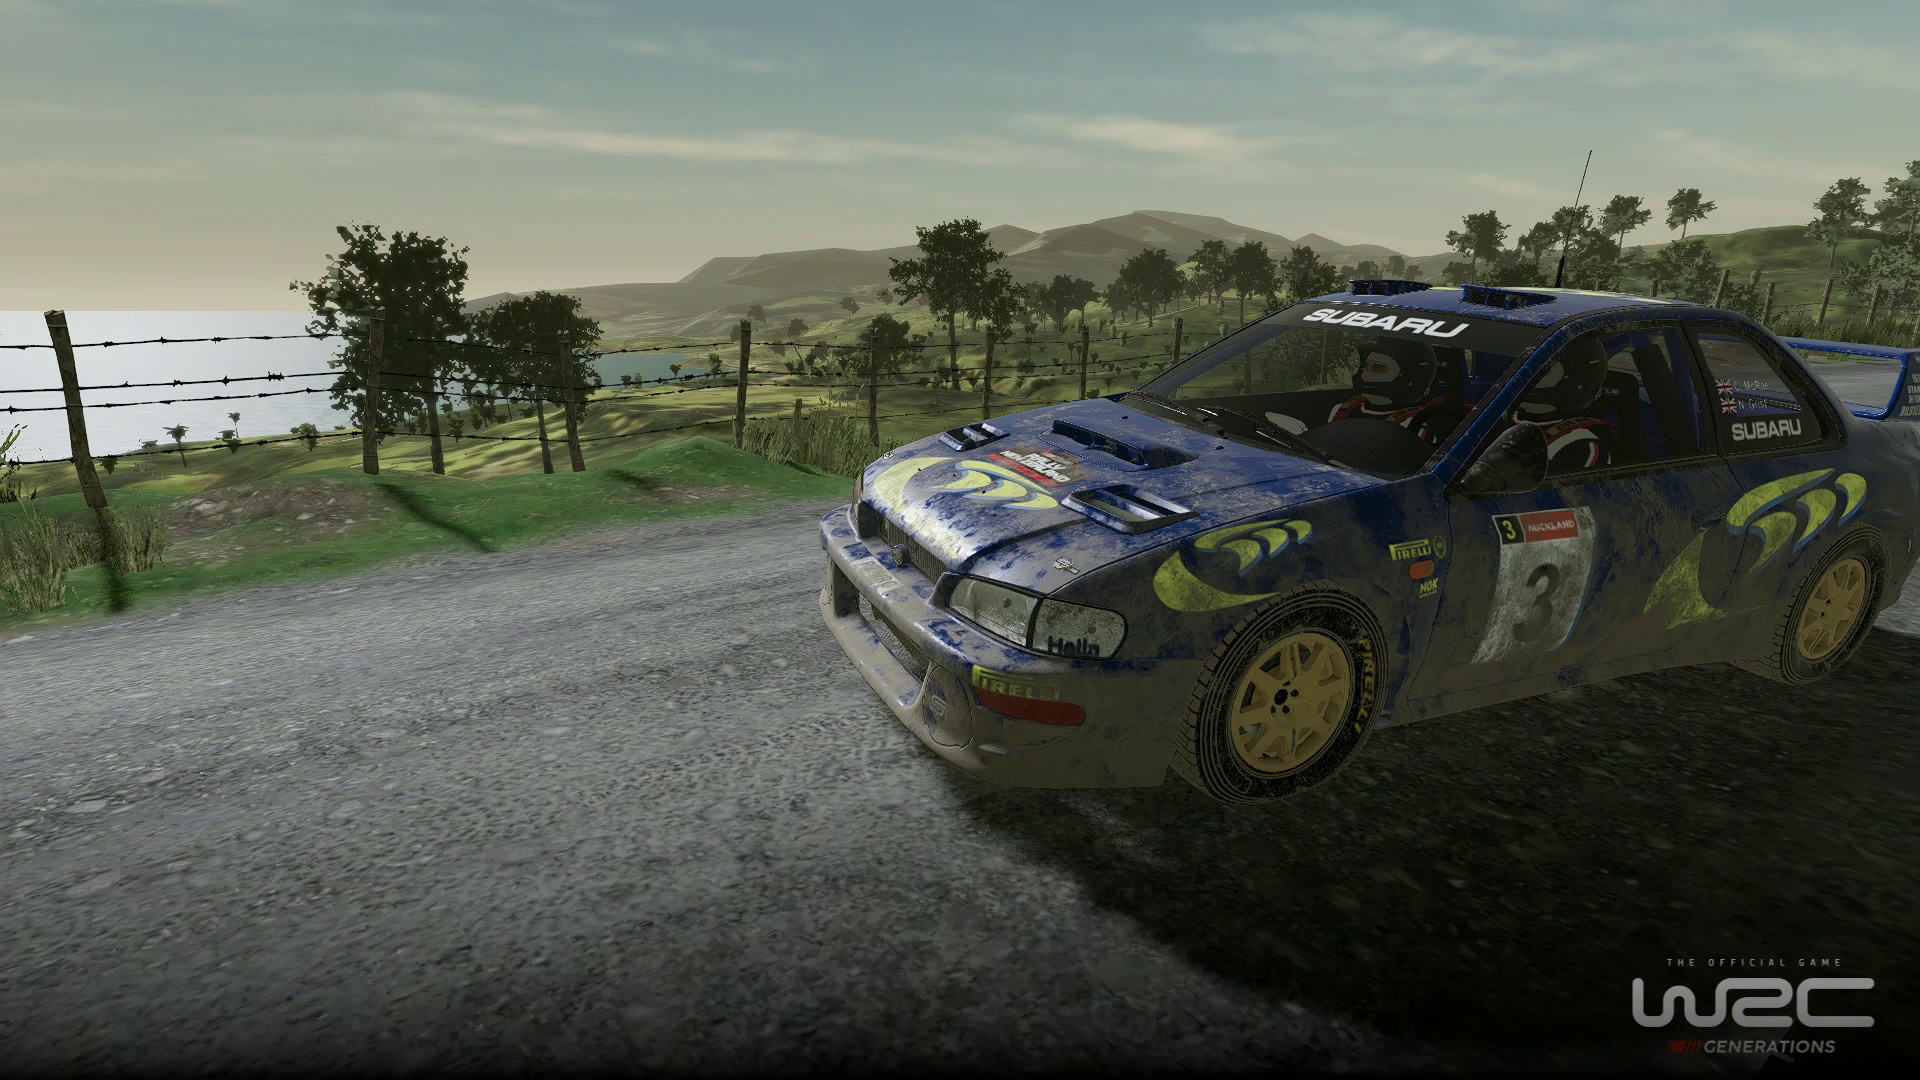 WRC Generatrions